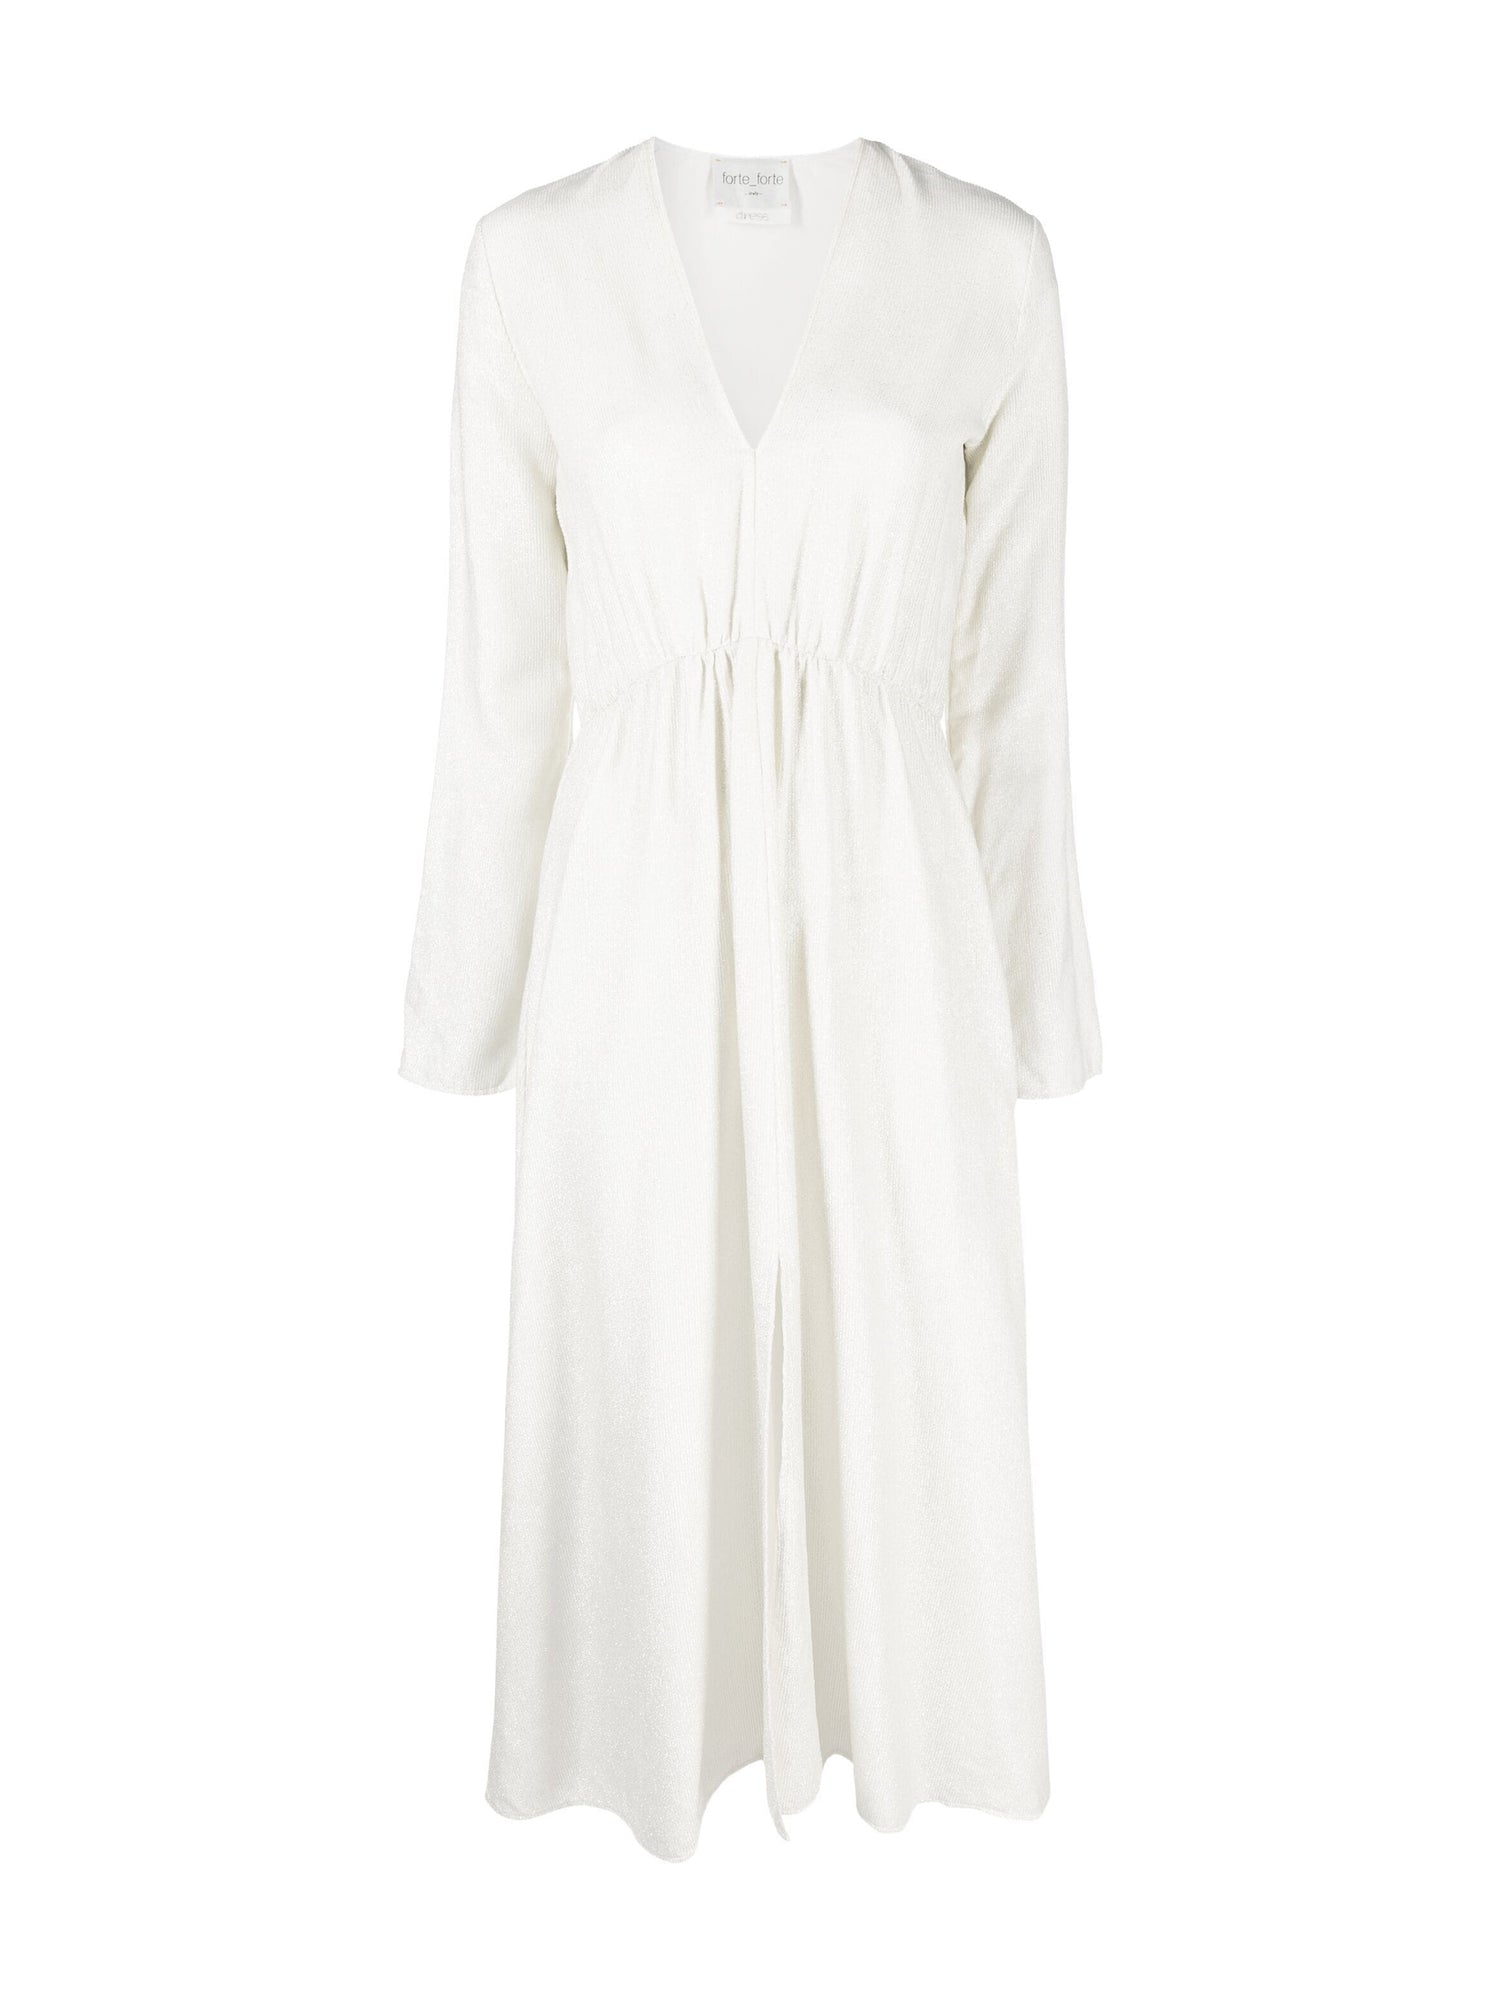 Long sleeves laminated velvet dress, platino